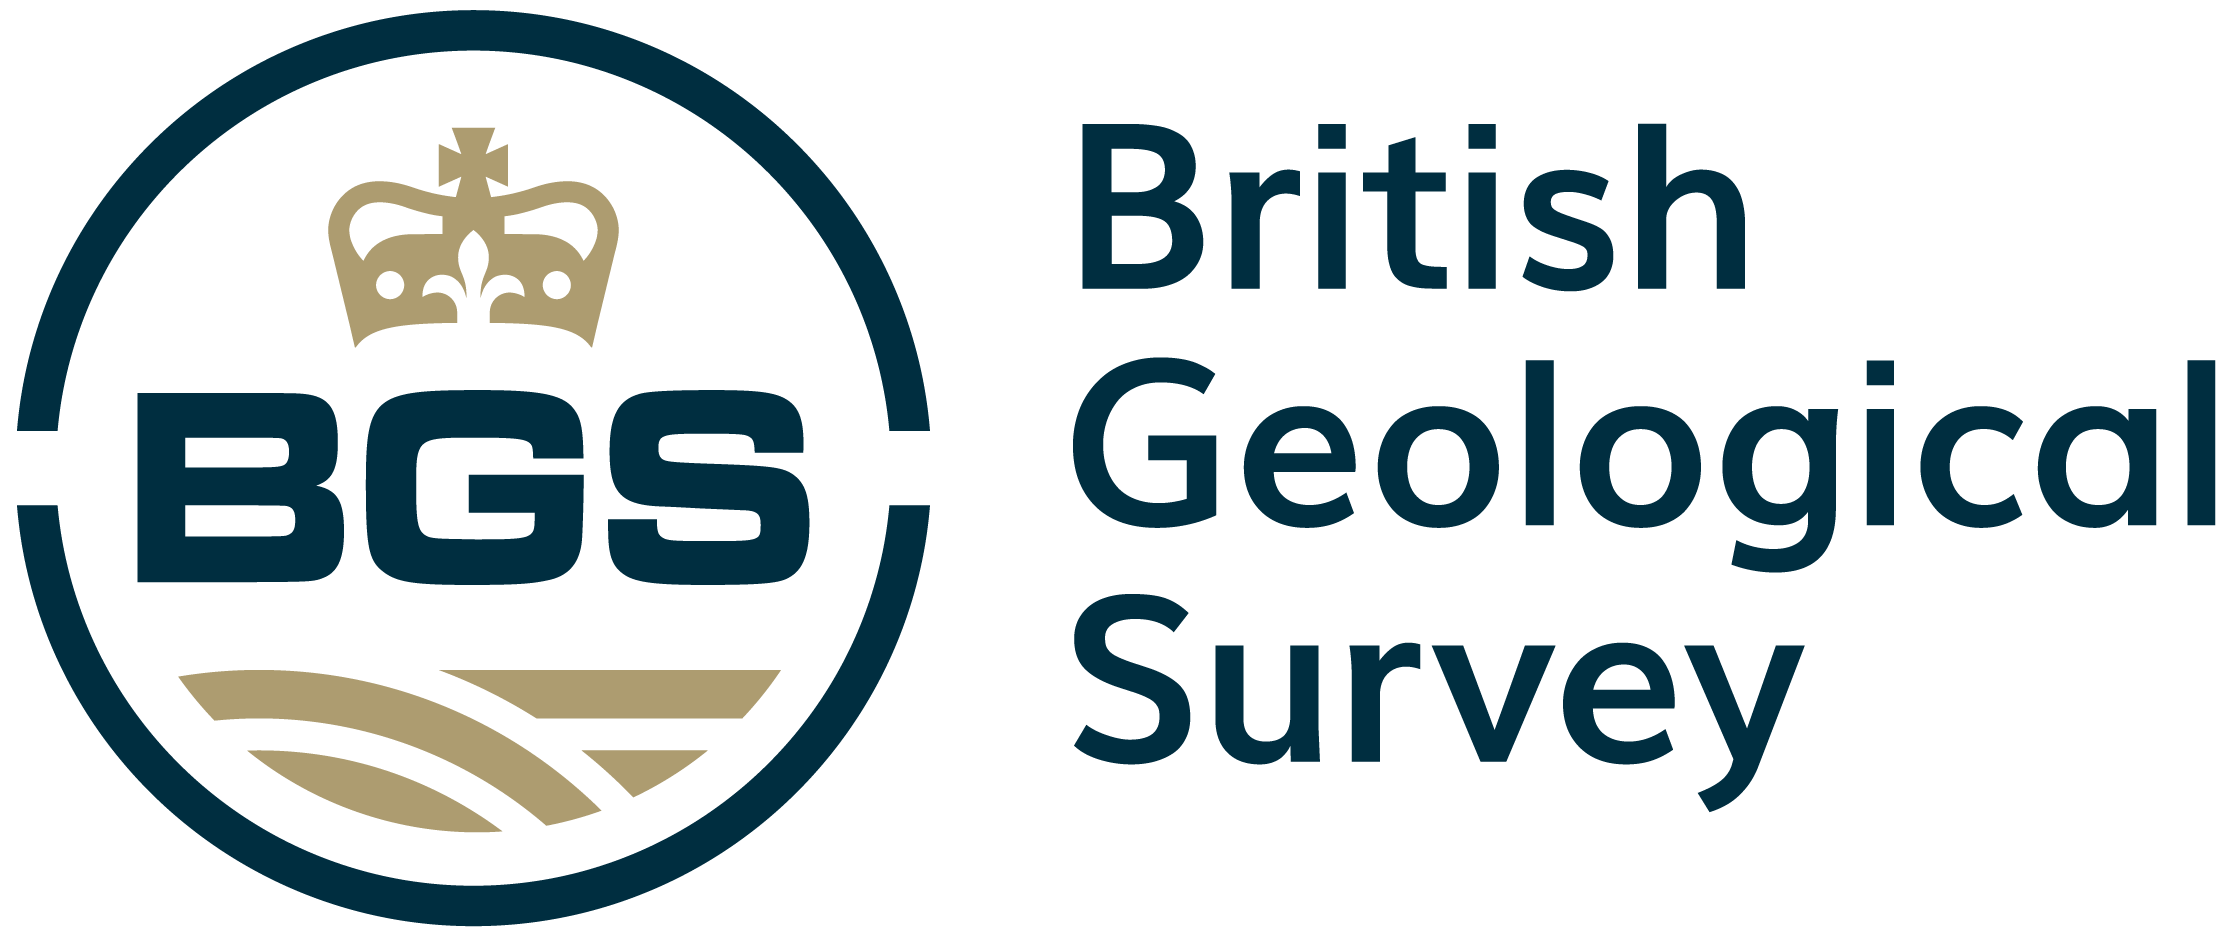 The British Geological Survey logo logo